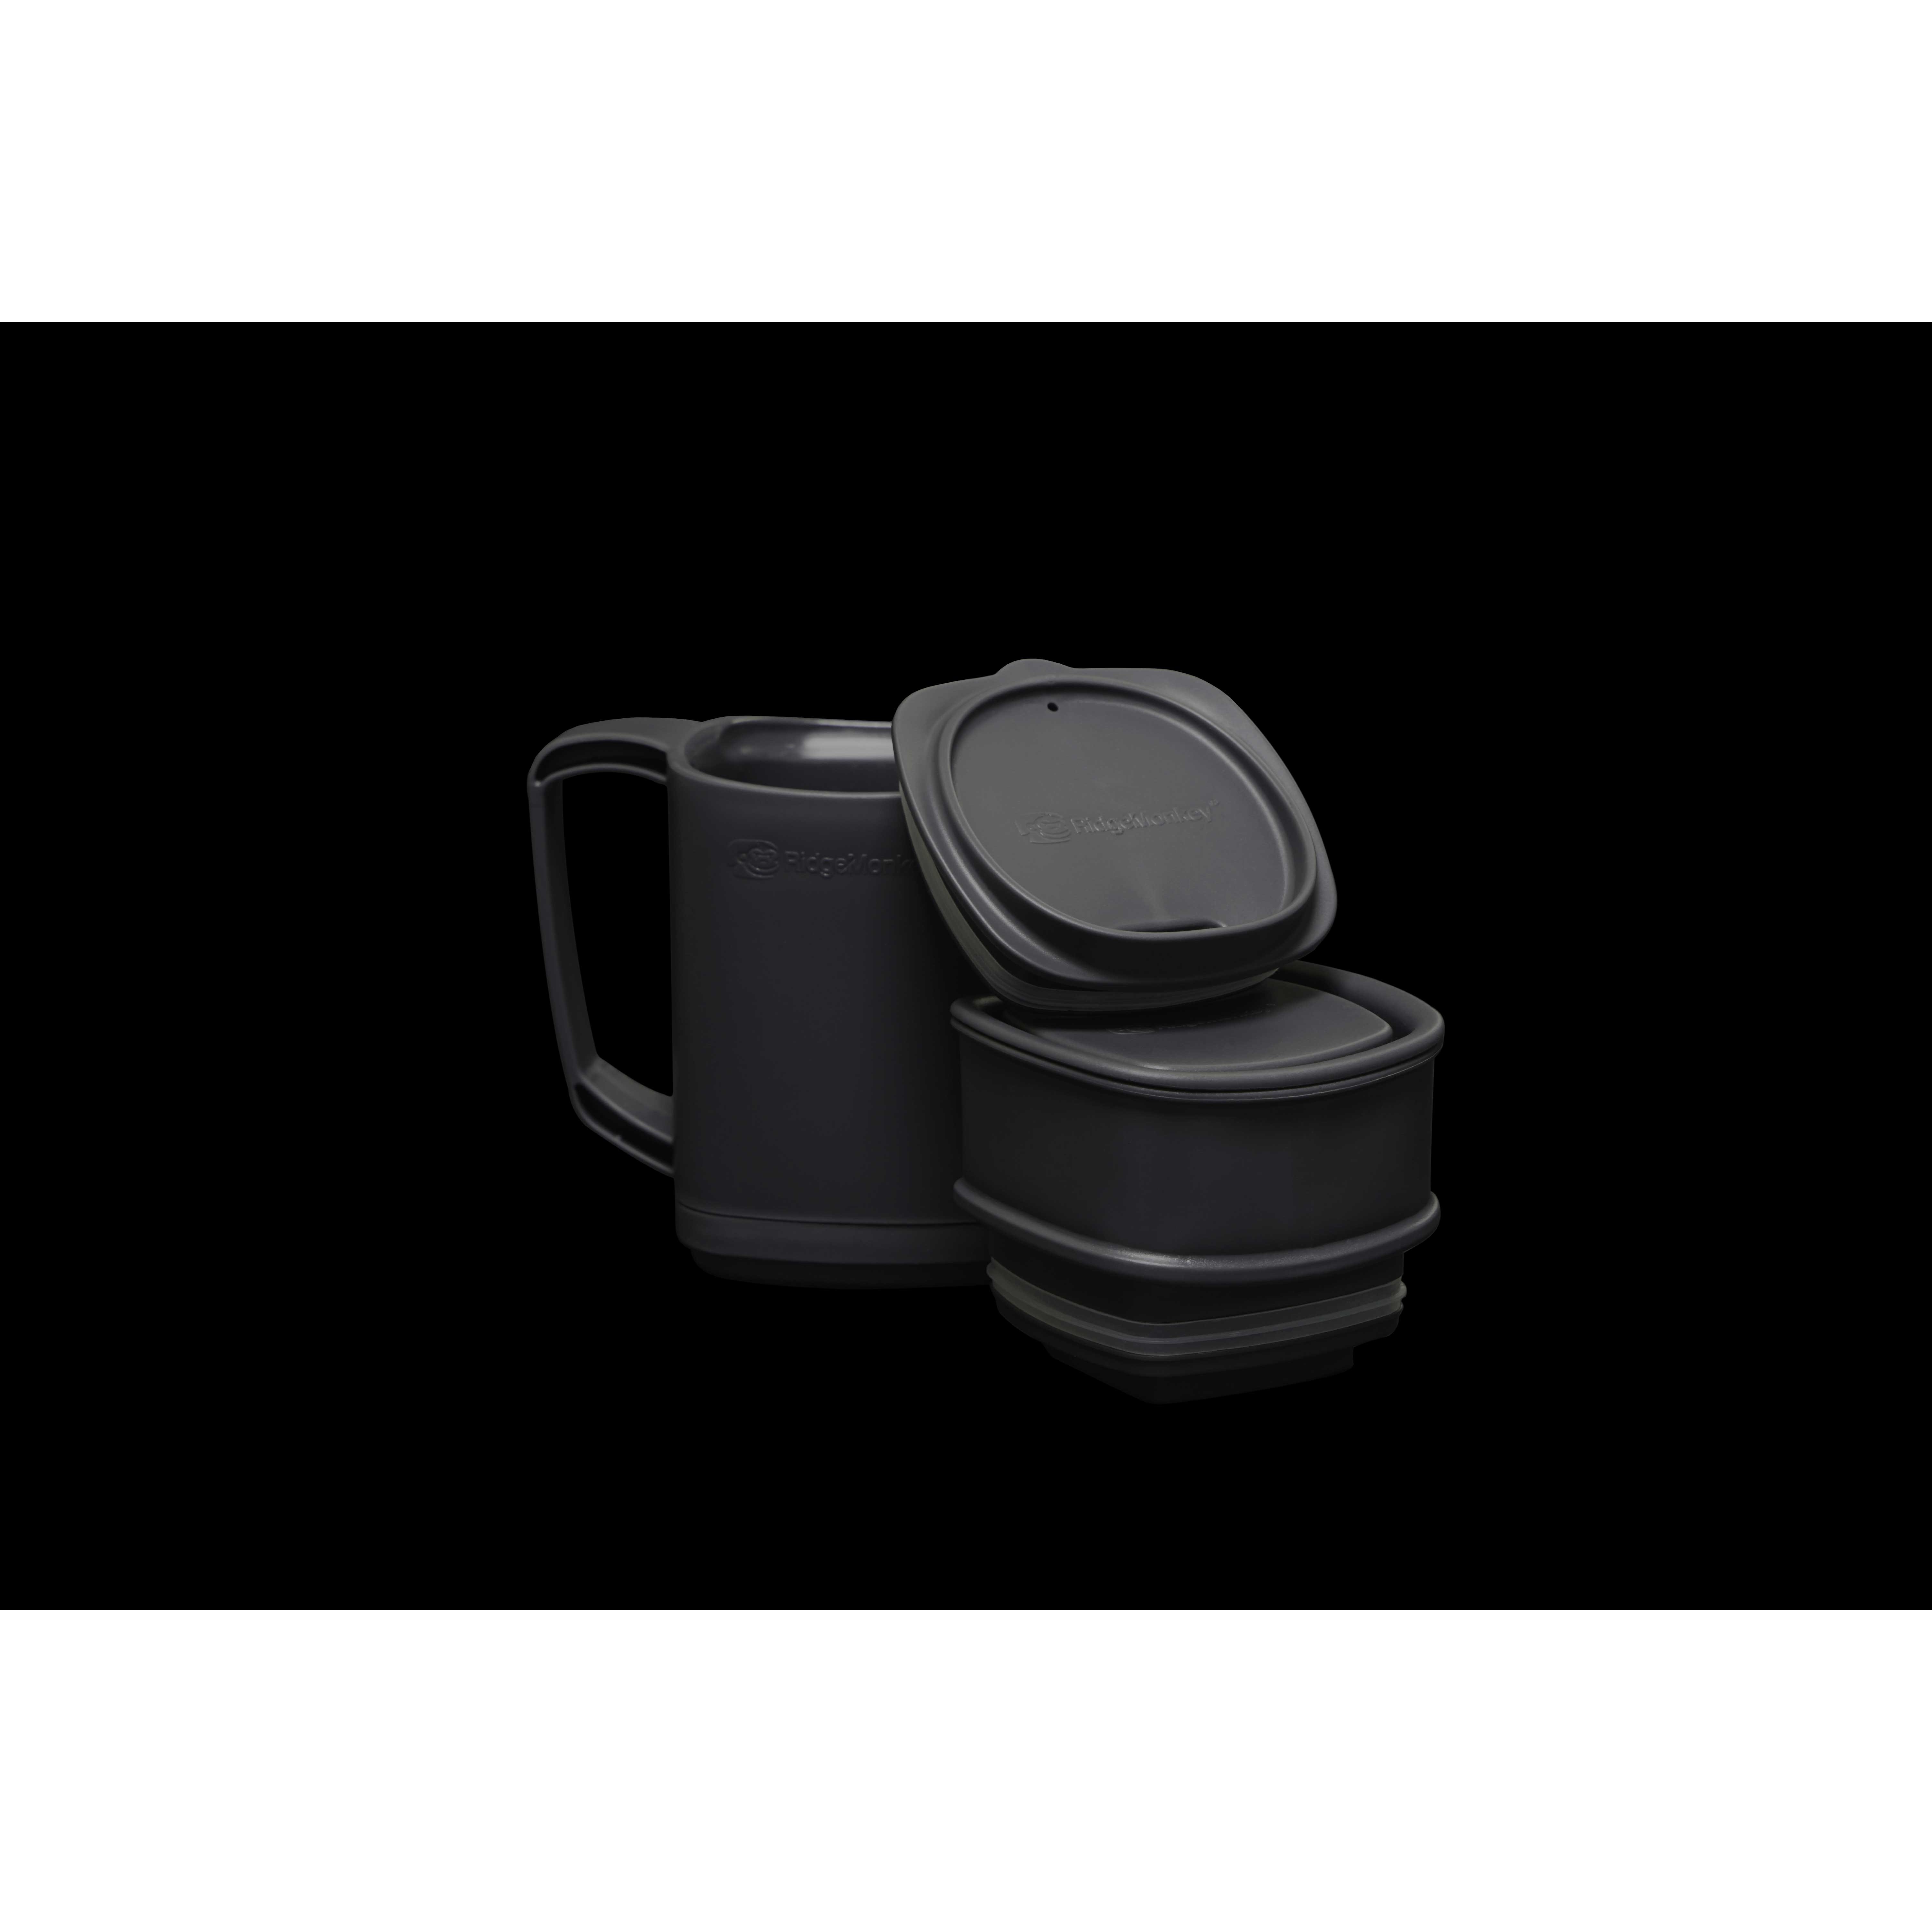 Cana RidgeMonkey Thermo Mug Dlx Brew Set Grey - RM550